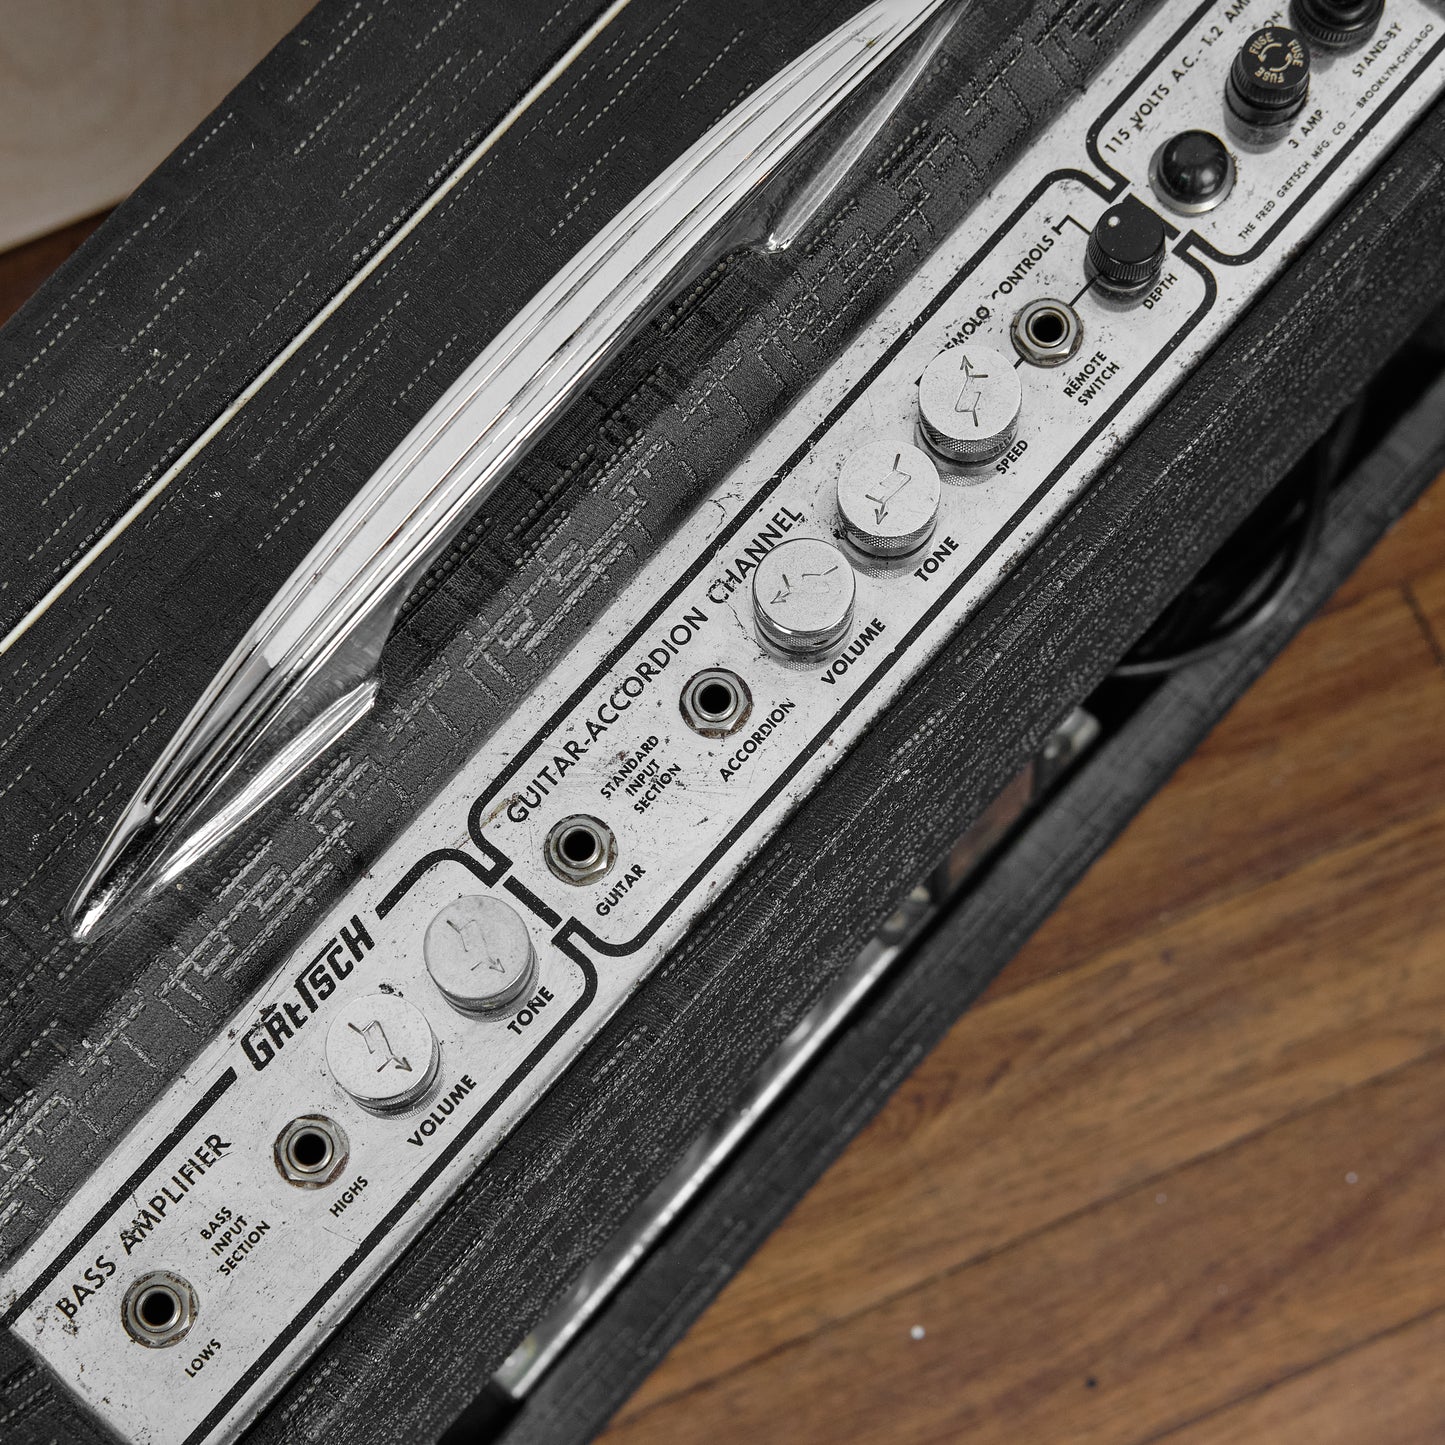 c1965 Gretsch 6159 Dual Bass Amp